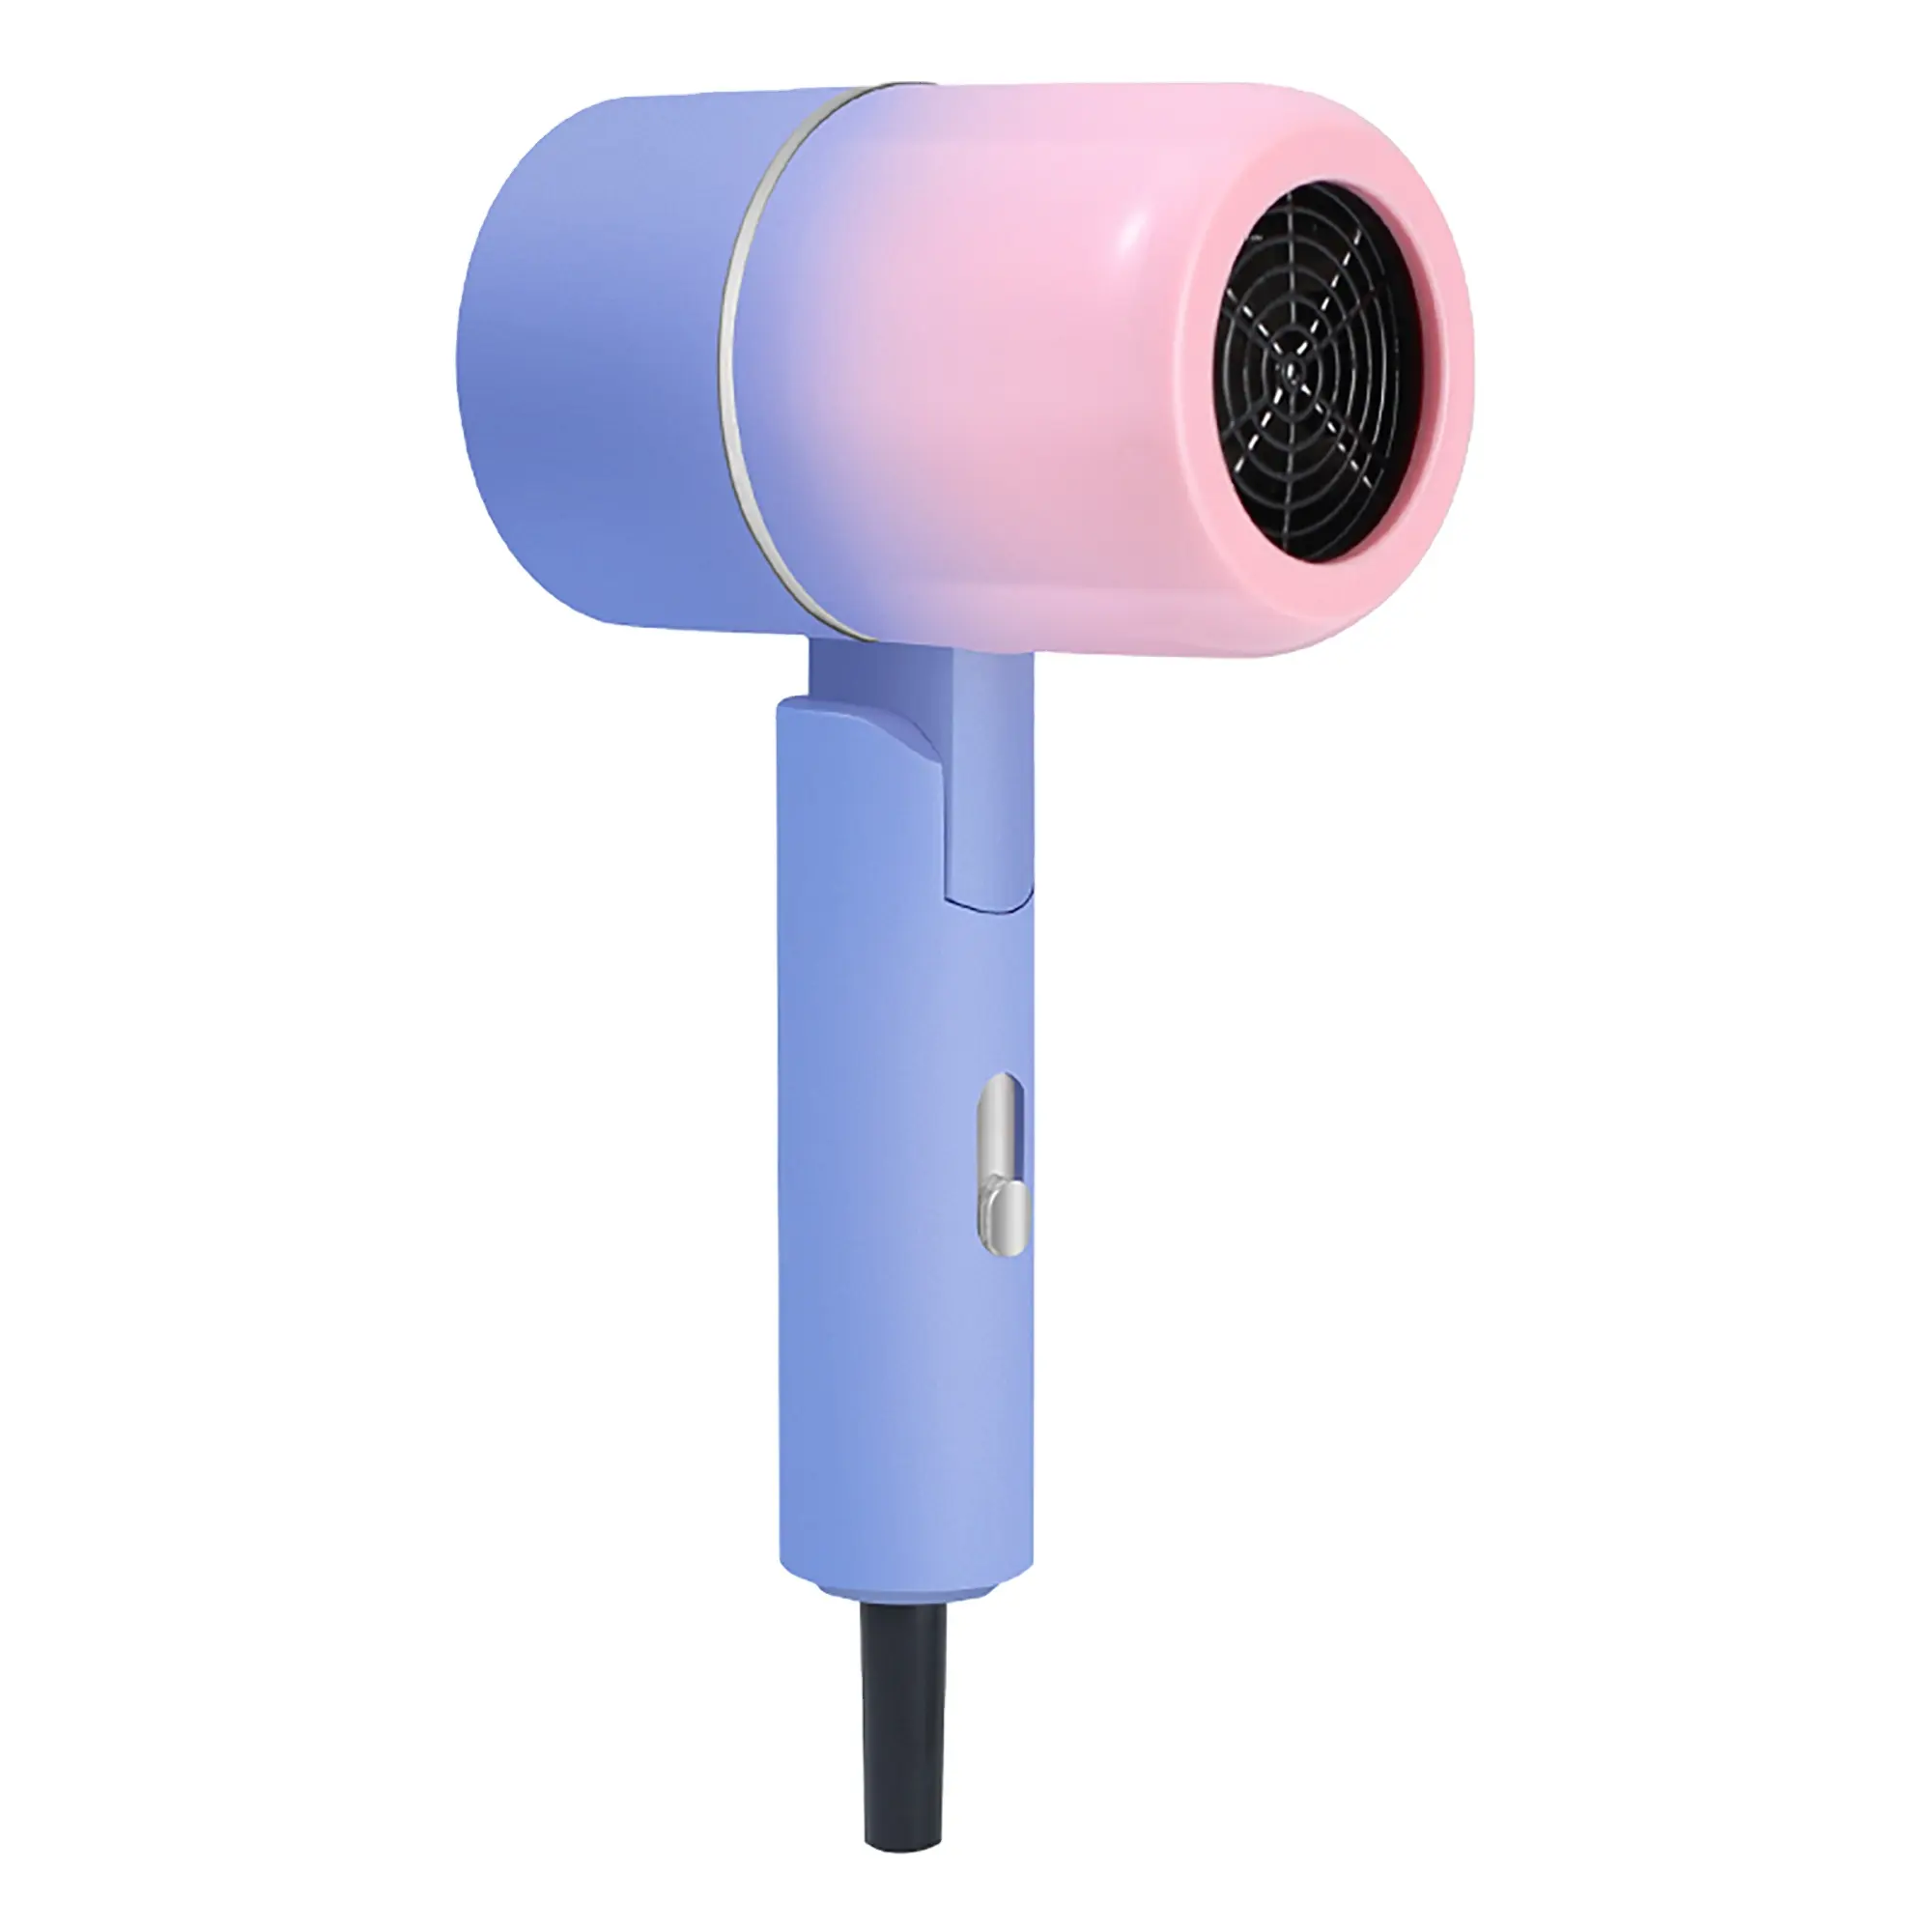 Nouveau produit dégradé de couleur Mini Portable mignon haute vitesse pliable sèche-cheveux ventilateur pour la maison hôtel voyage